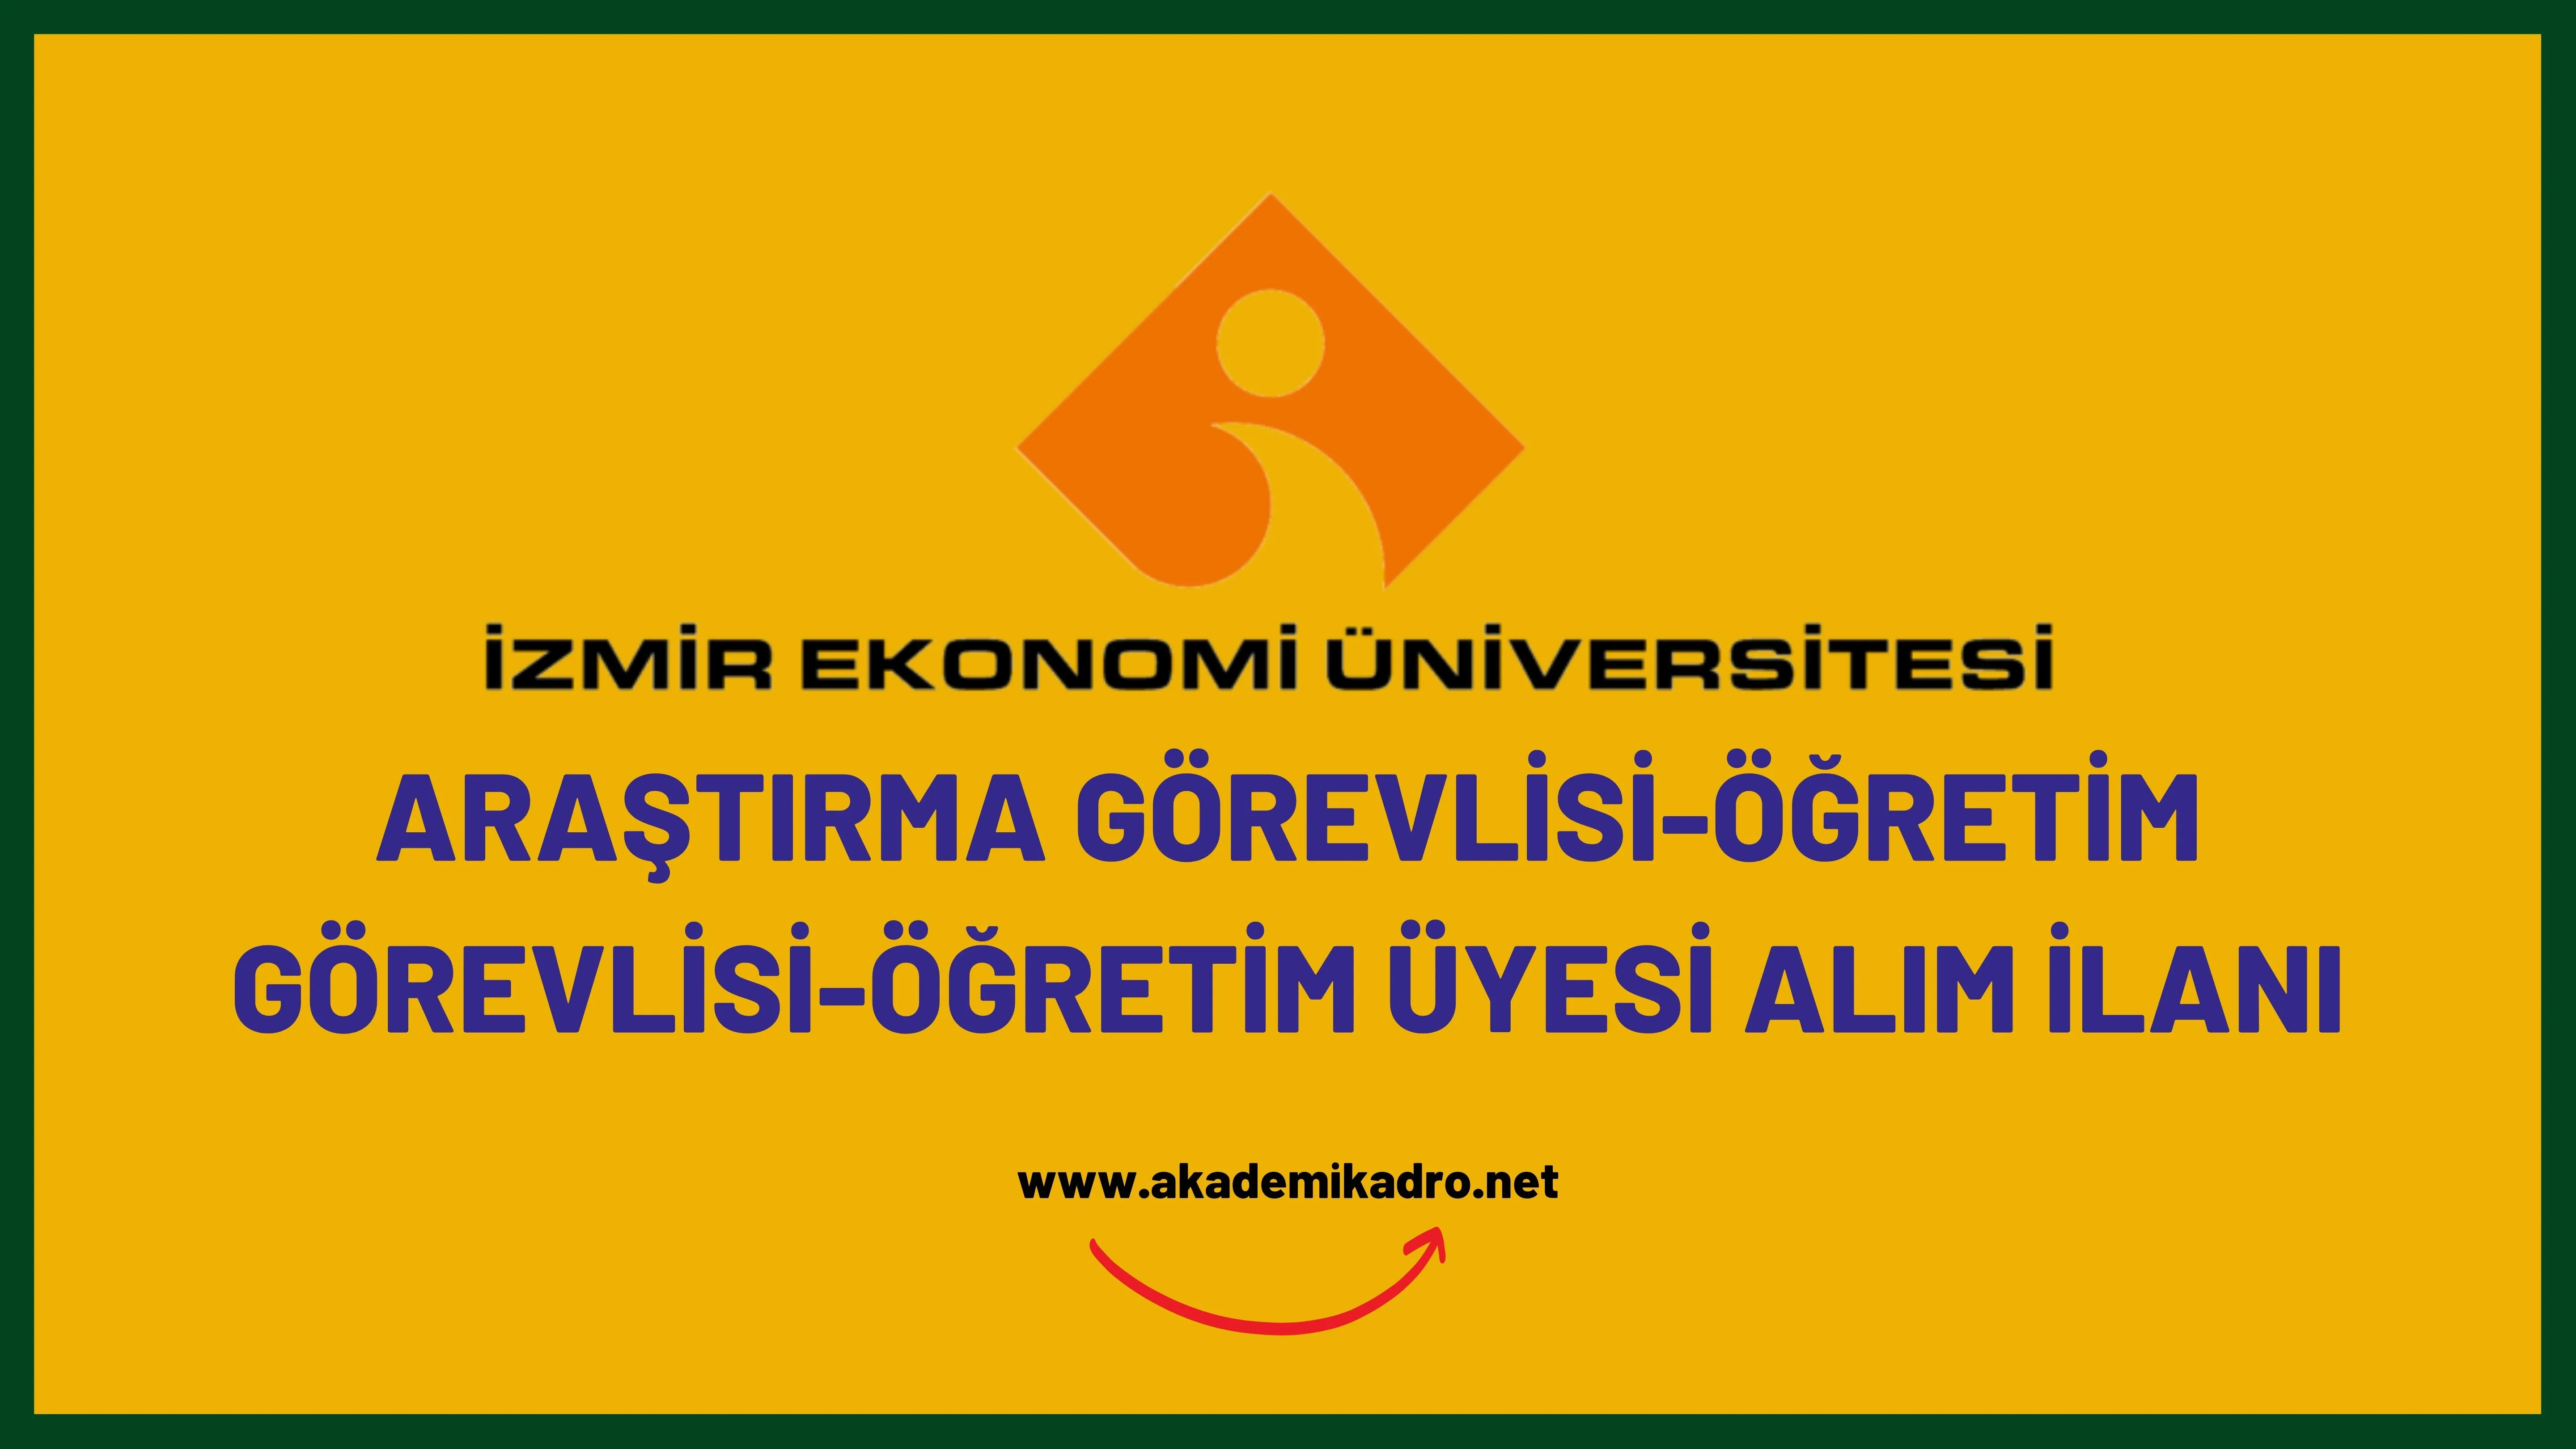 İzmir Ekonomi Üniversitesi 4 Araştırma görevlisi, 2 Öğretim Görevlisi ve 2 Öğretim Üyesi alacak. Son başvuru tarihi 30 Ocak 2023.